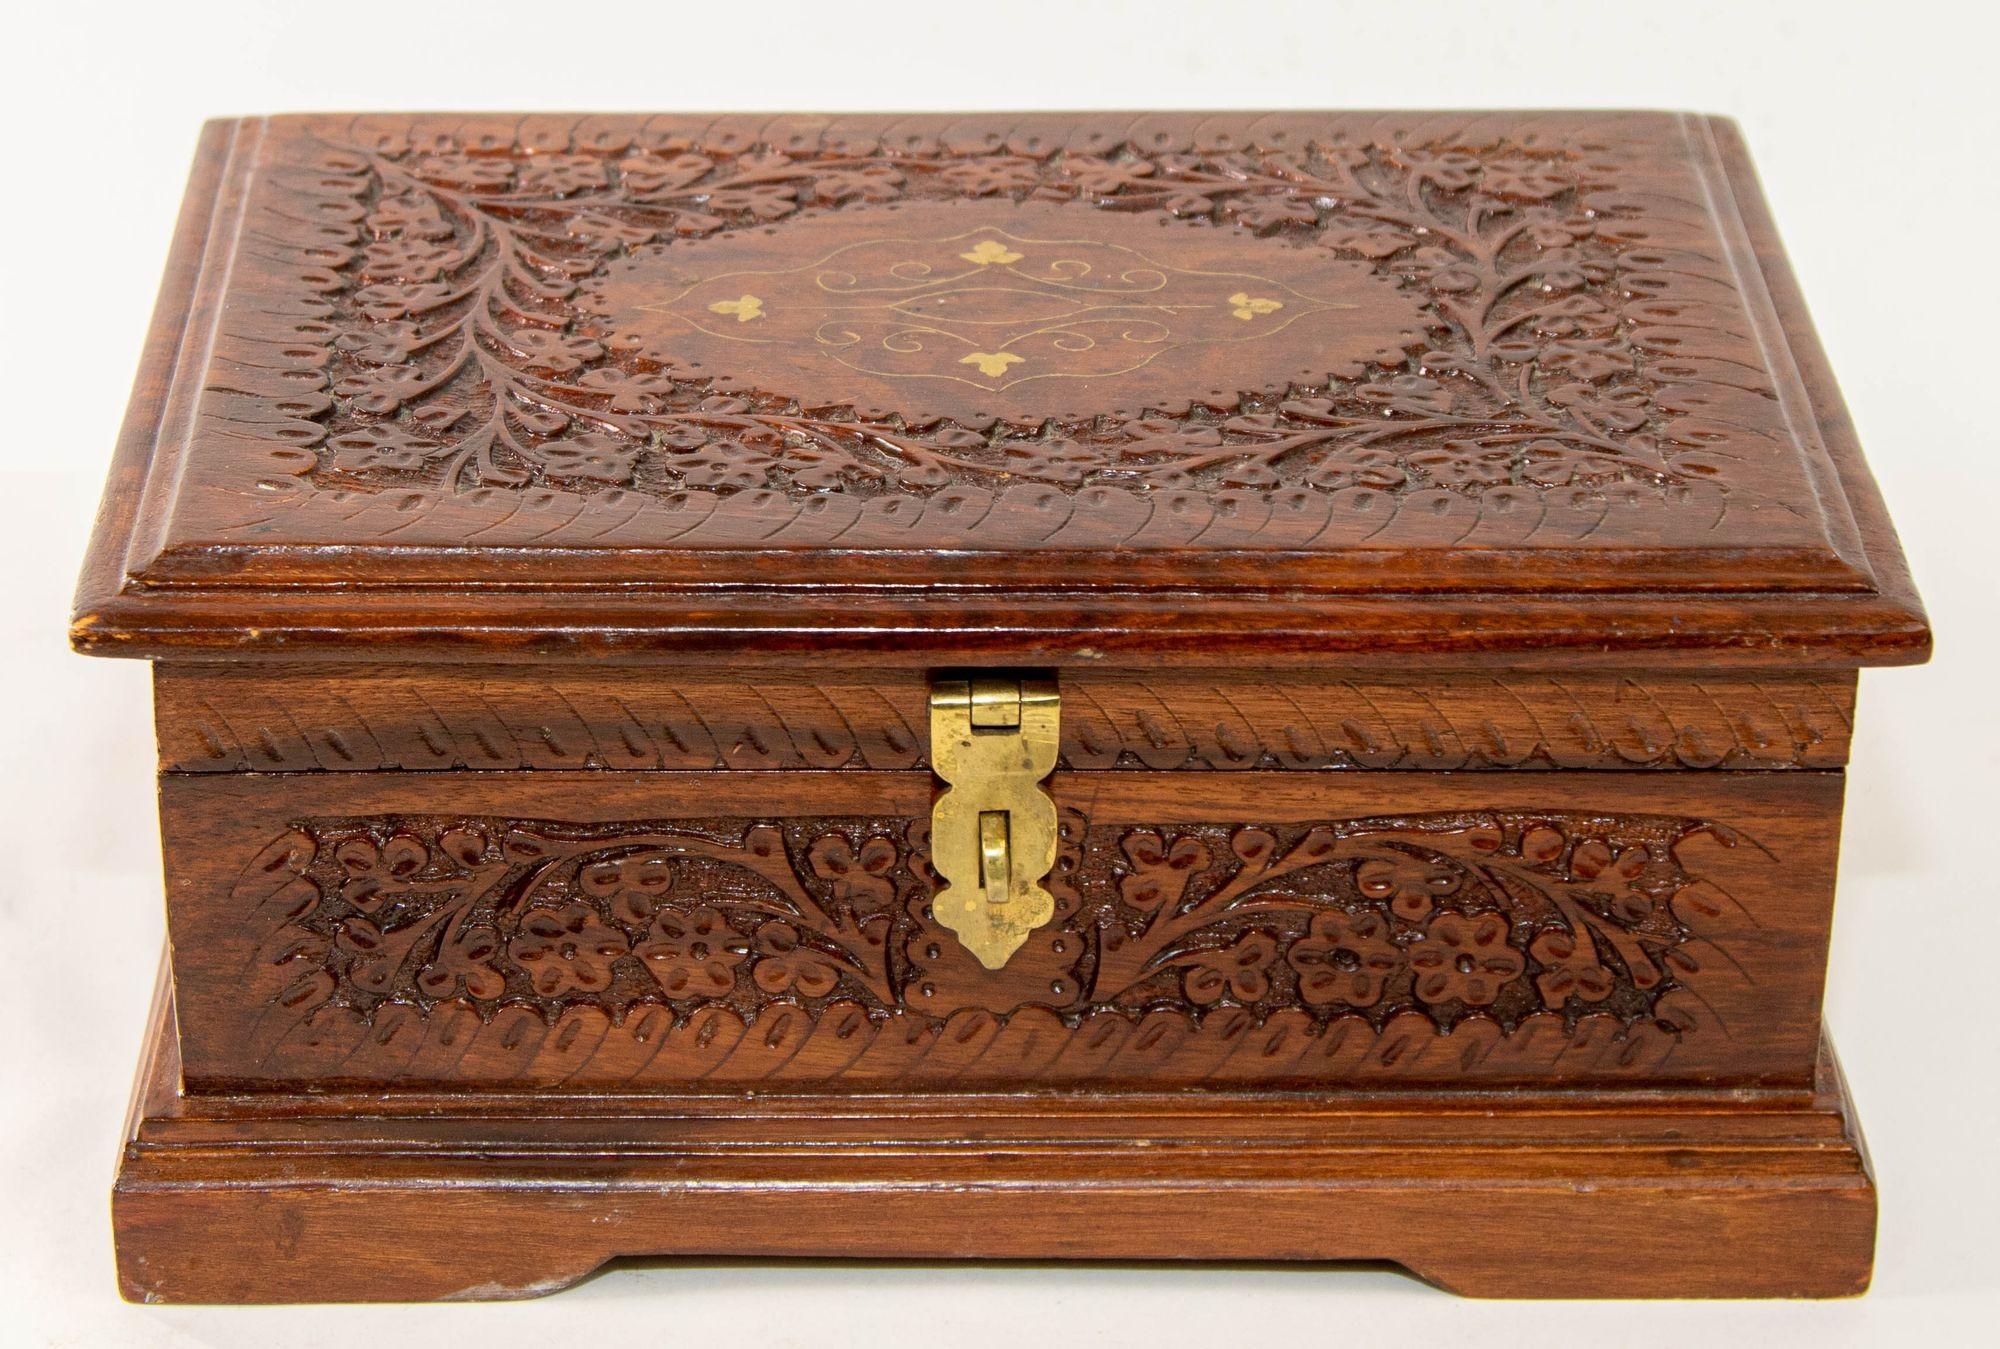 Vintage handgeschnitzten Holz Schmuck Schmuck Aufbewahrungsbox mit Messing eingelegt.
Handgeschnitzte große hölzerne Anglo-Raj-Schmuckschatulle. Gefunden in Kaschmir, Indien.
Holzkiste aus der Mitte des 20. Jahrhunderts, reich verziert mit Arabesken